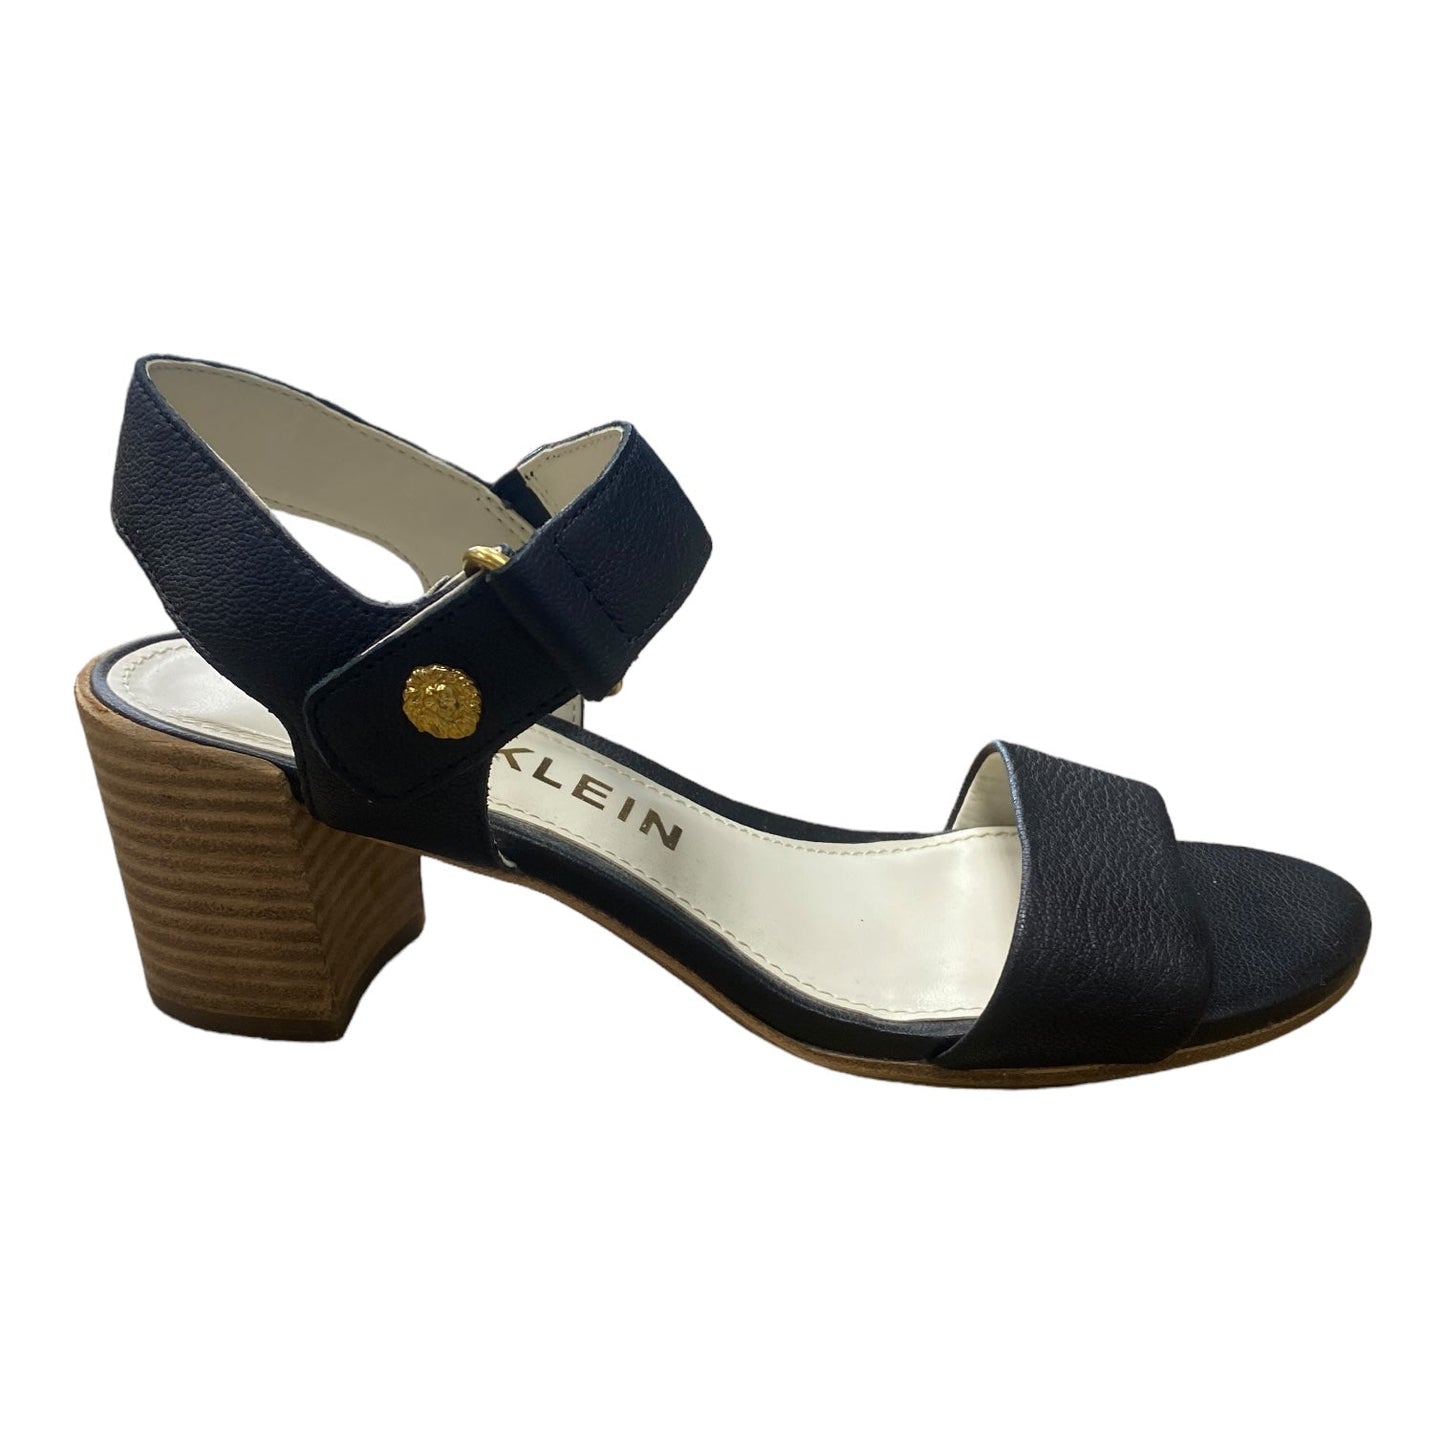 Black Sandals Heels Block Anne Klein, Size 7.5